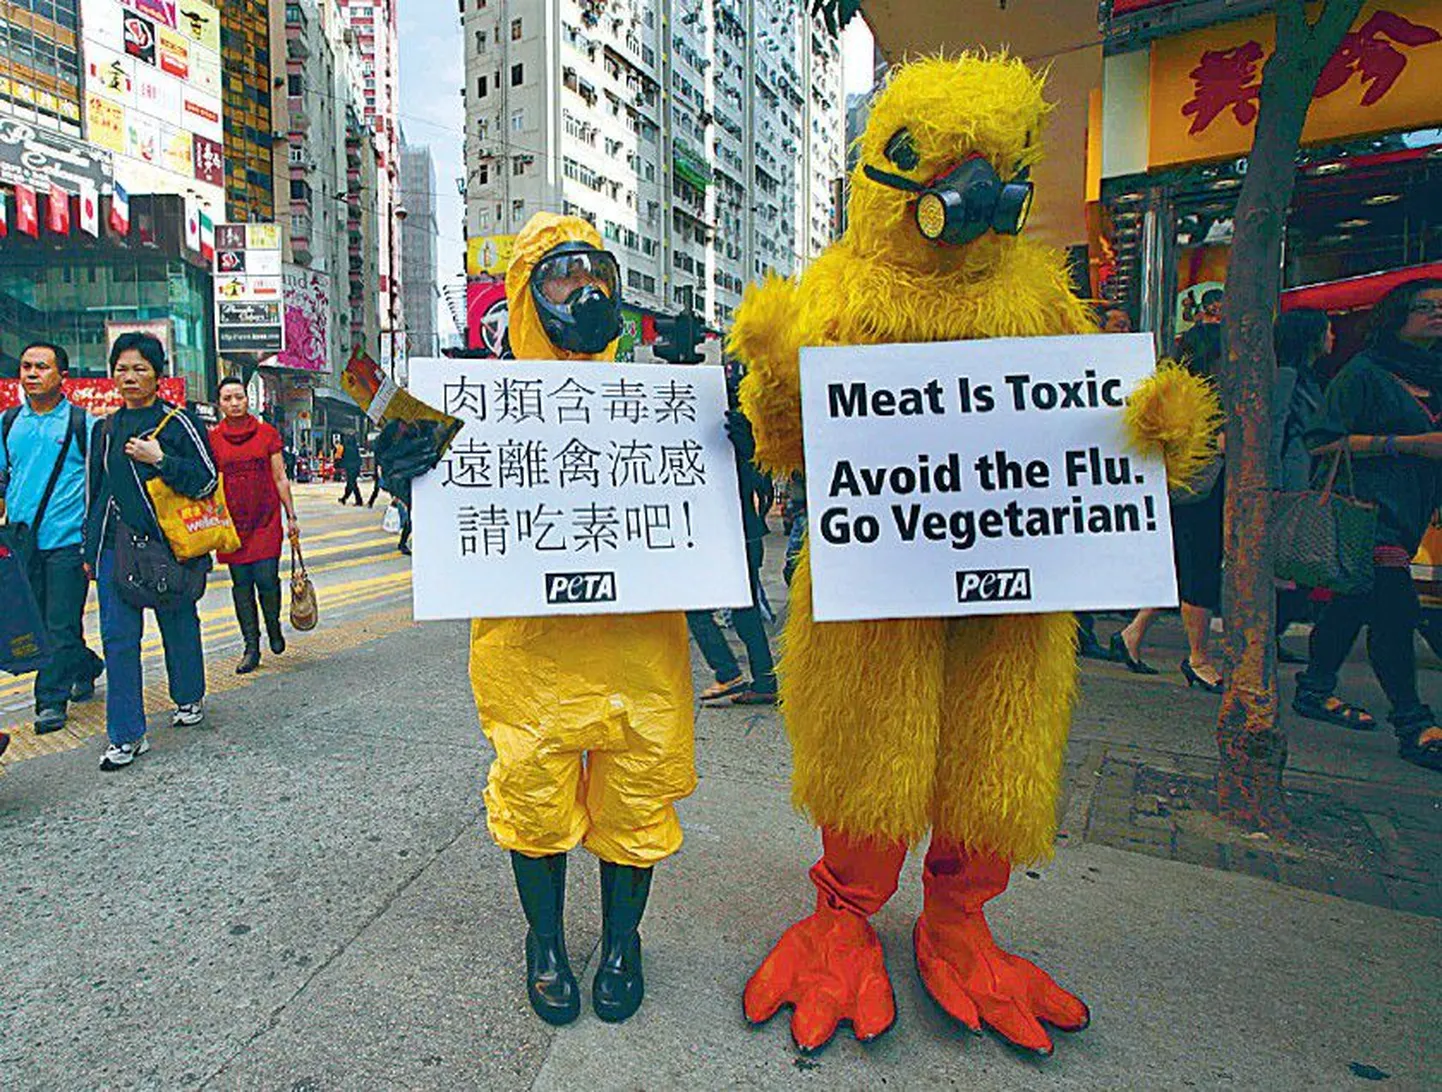 PETA loomakaitseaktivistid korraldasid novembris Hongkongis pärast üht linnugripijuhtumit lihasöömisevastase protestiaktsiooni.